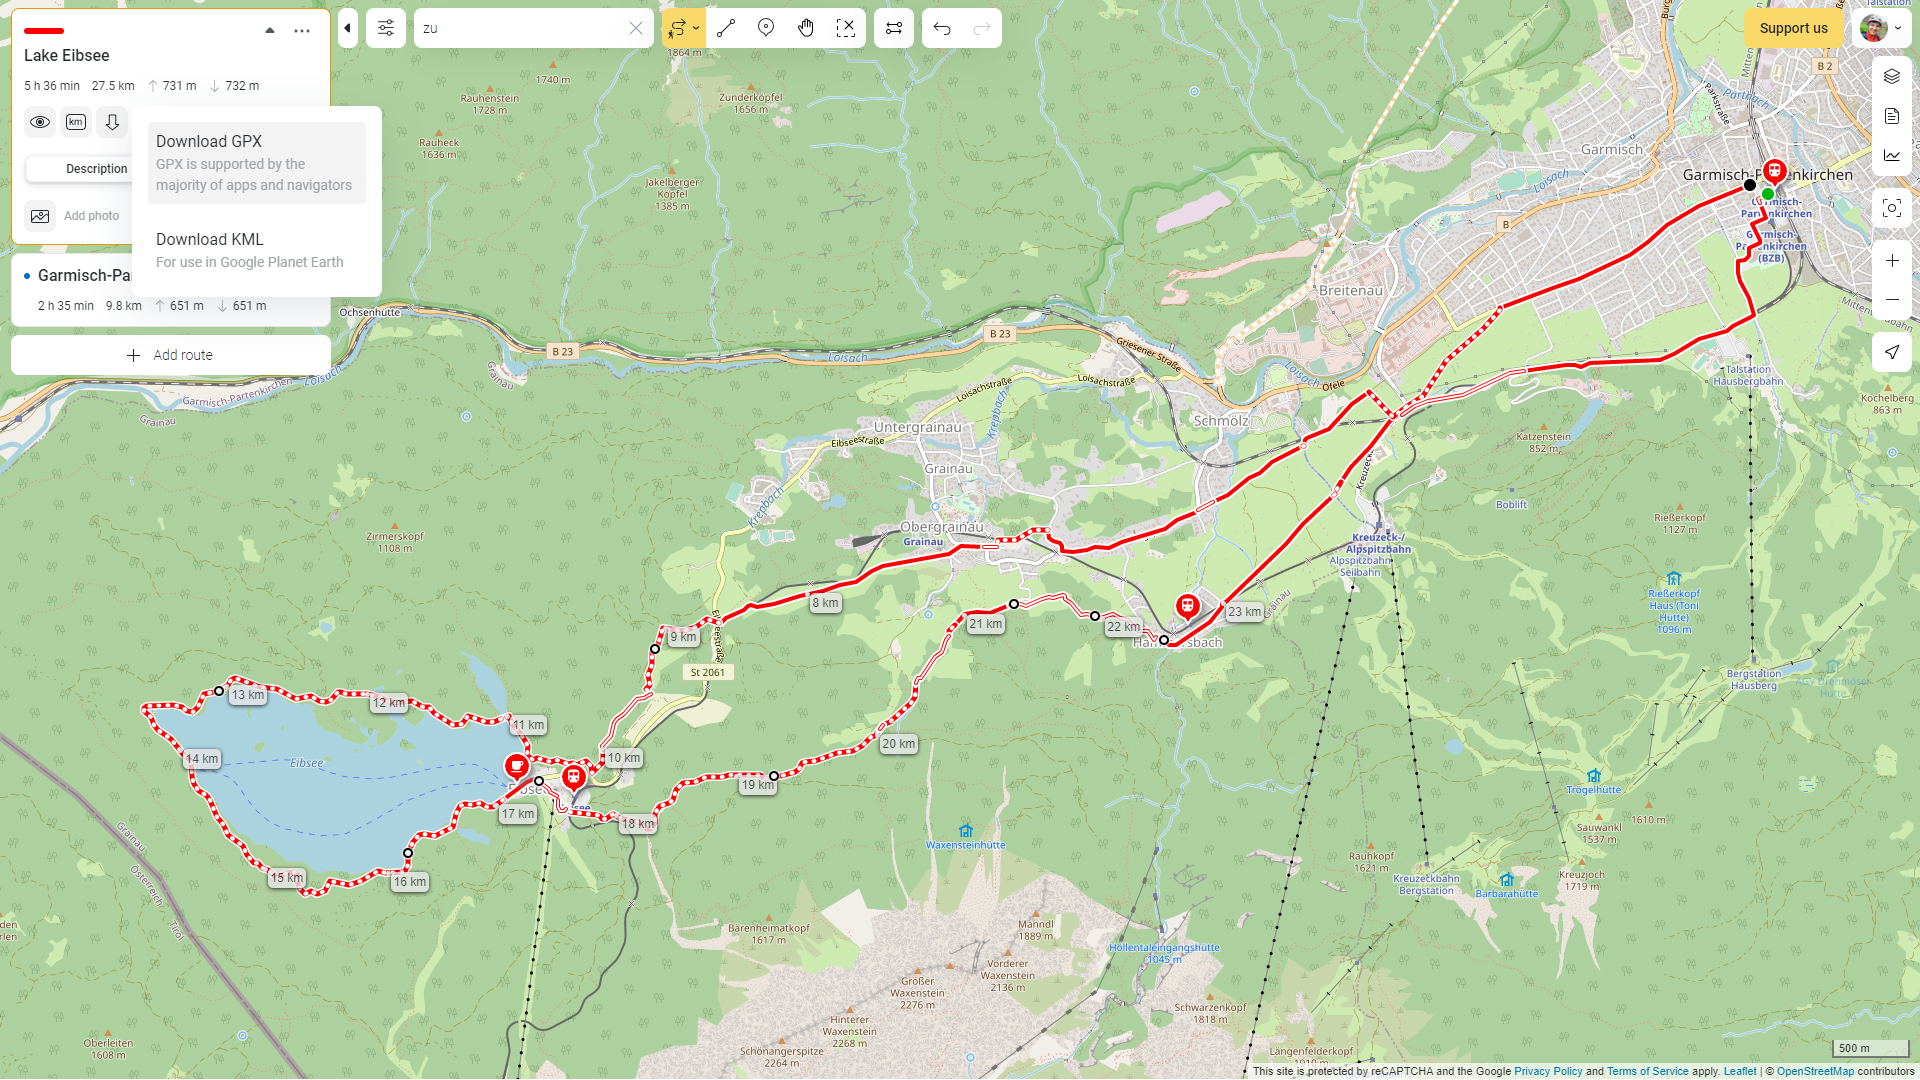 Как мы с друзьями собрали сервис для построения маршрутов для походов и велопутешествий ActiveTrip.me - 4